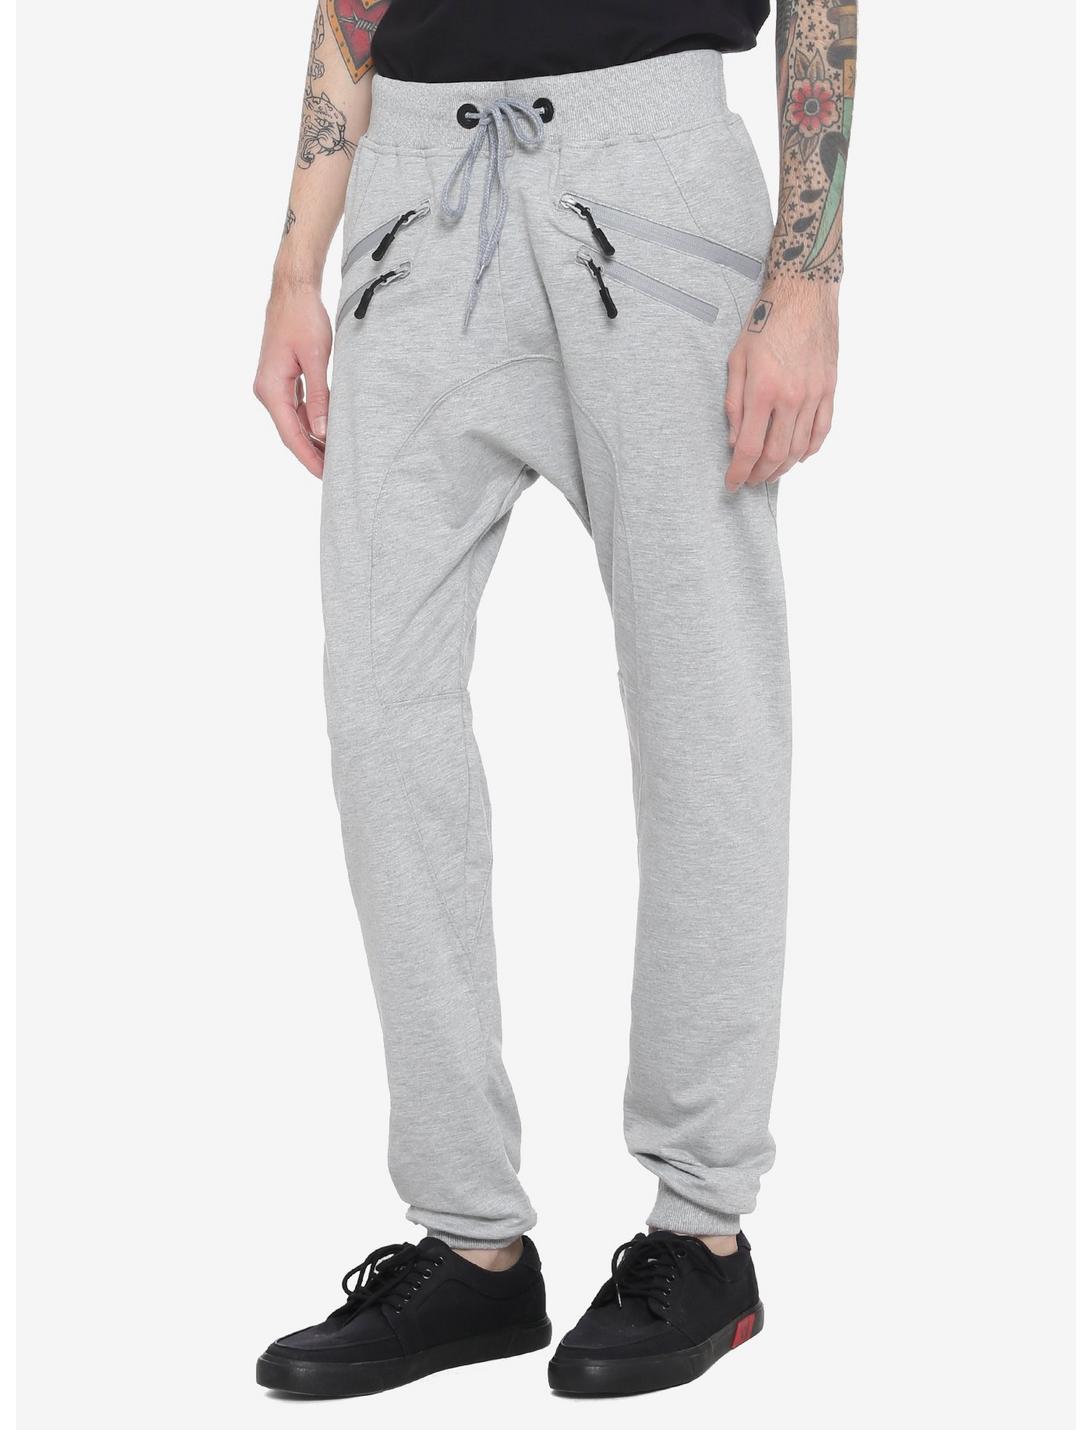 Grey Zipper Jogger Pants, GREY, hi-res